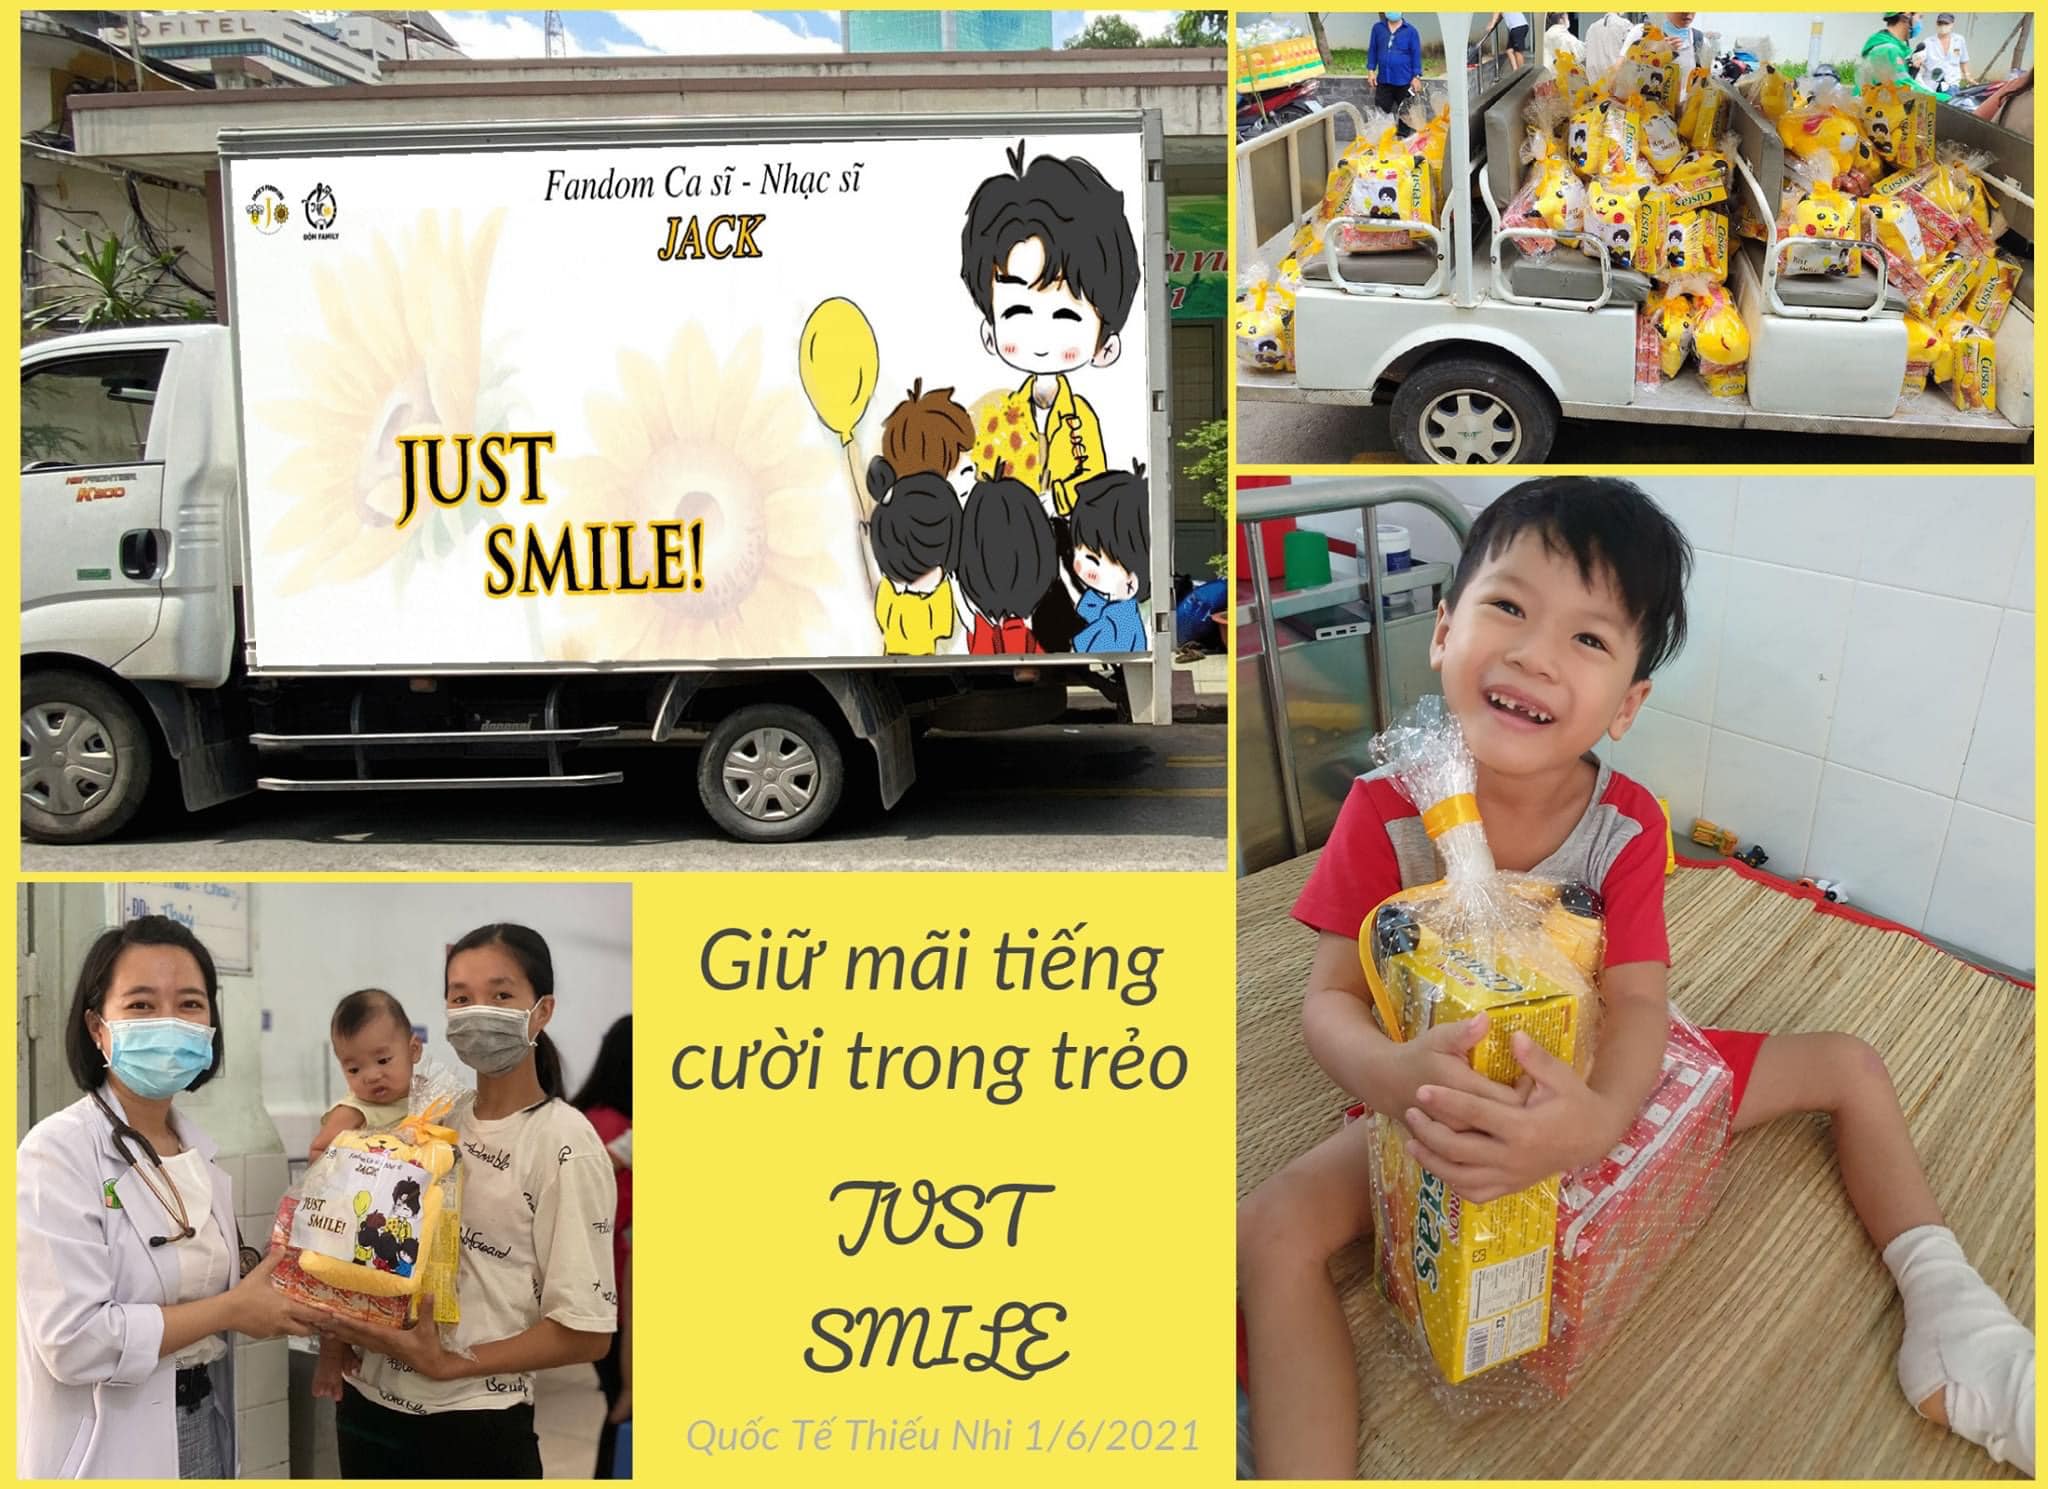 Jack cùng FC ủng hộ Bắc Giang gần 120 triệu, gửi xe quà đến BV Nhi Đồng cho các em bé nhân ngày 1/6